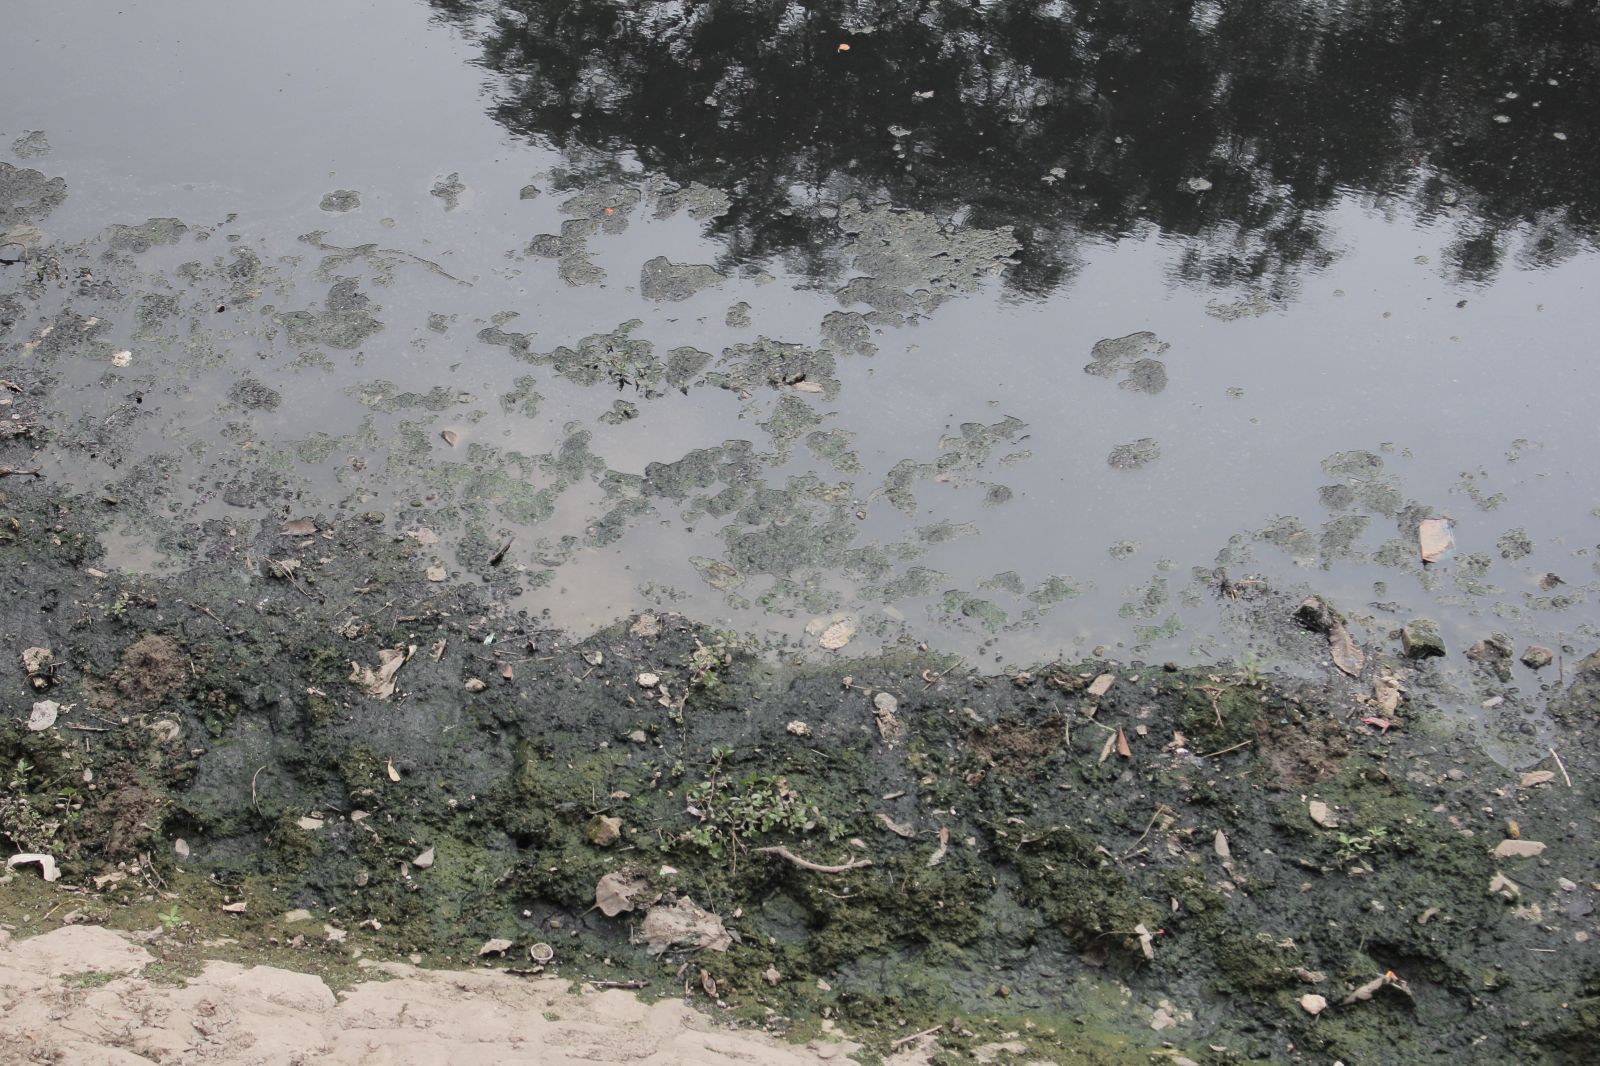  Dòng nước đen kịt, rêu kết thành mảng lớn dạt vào bên bờ, bốc lên mùi khó chịu.